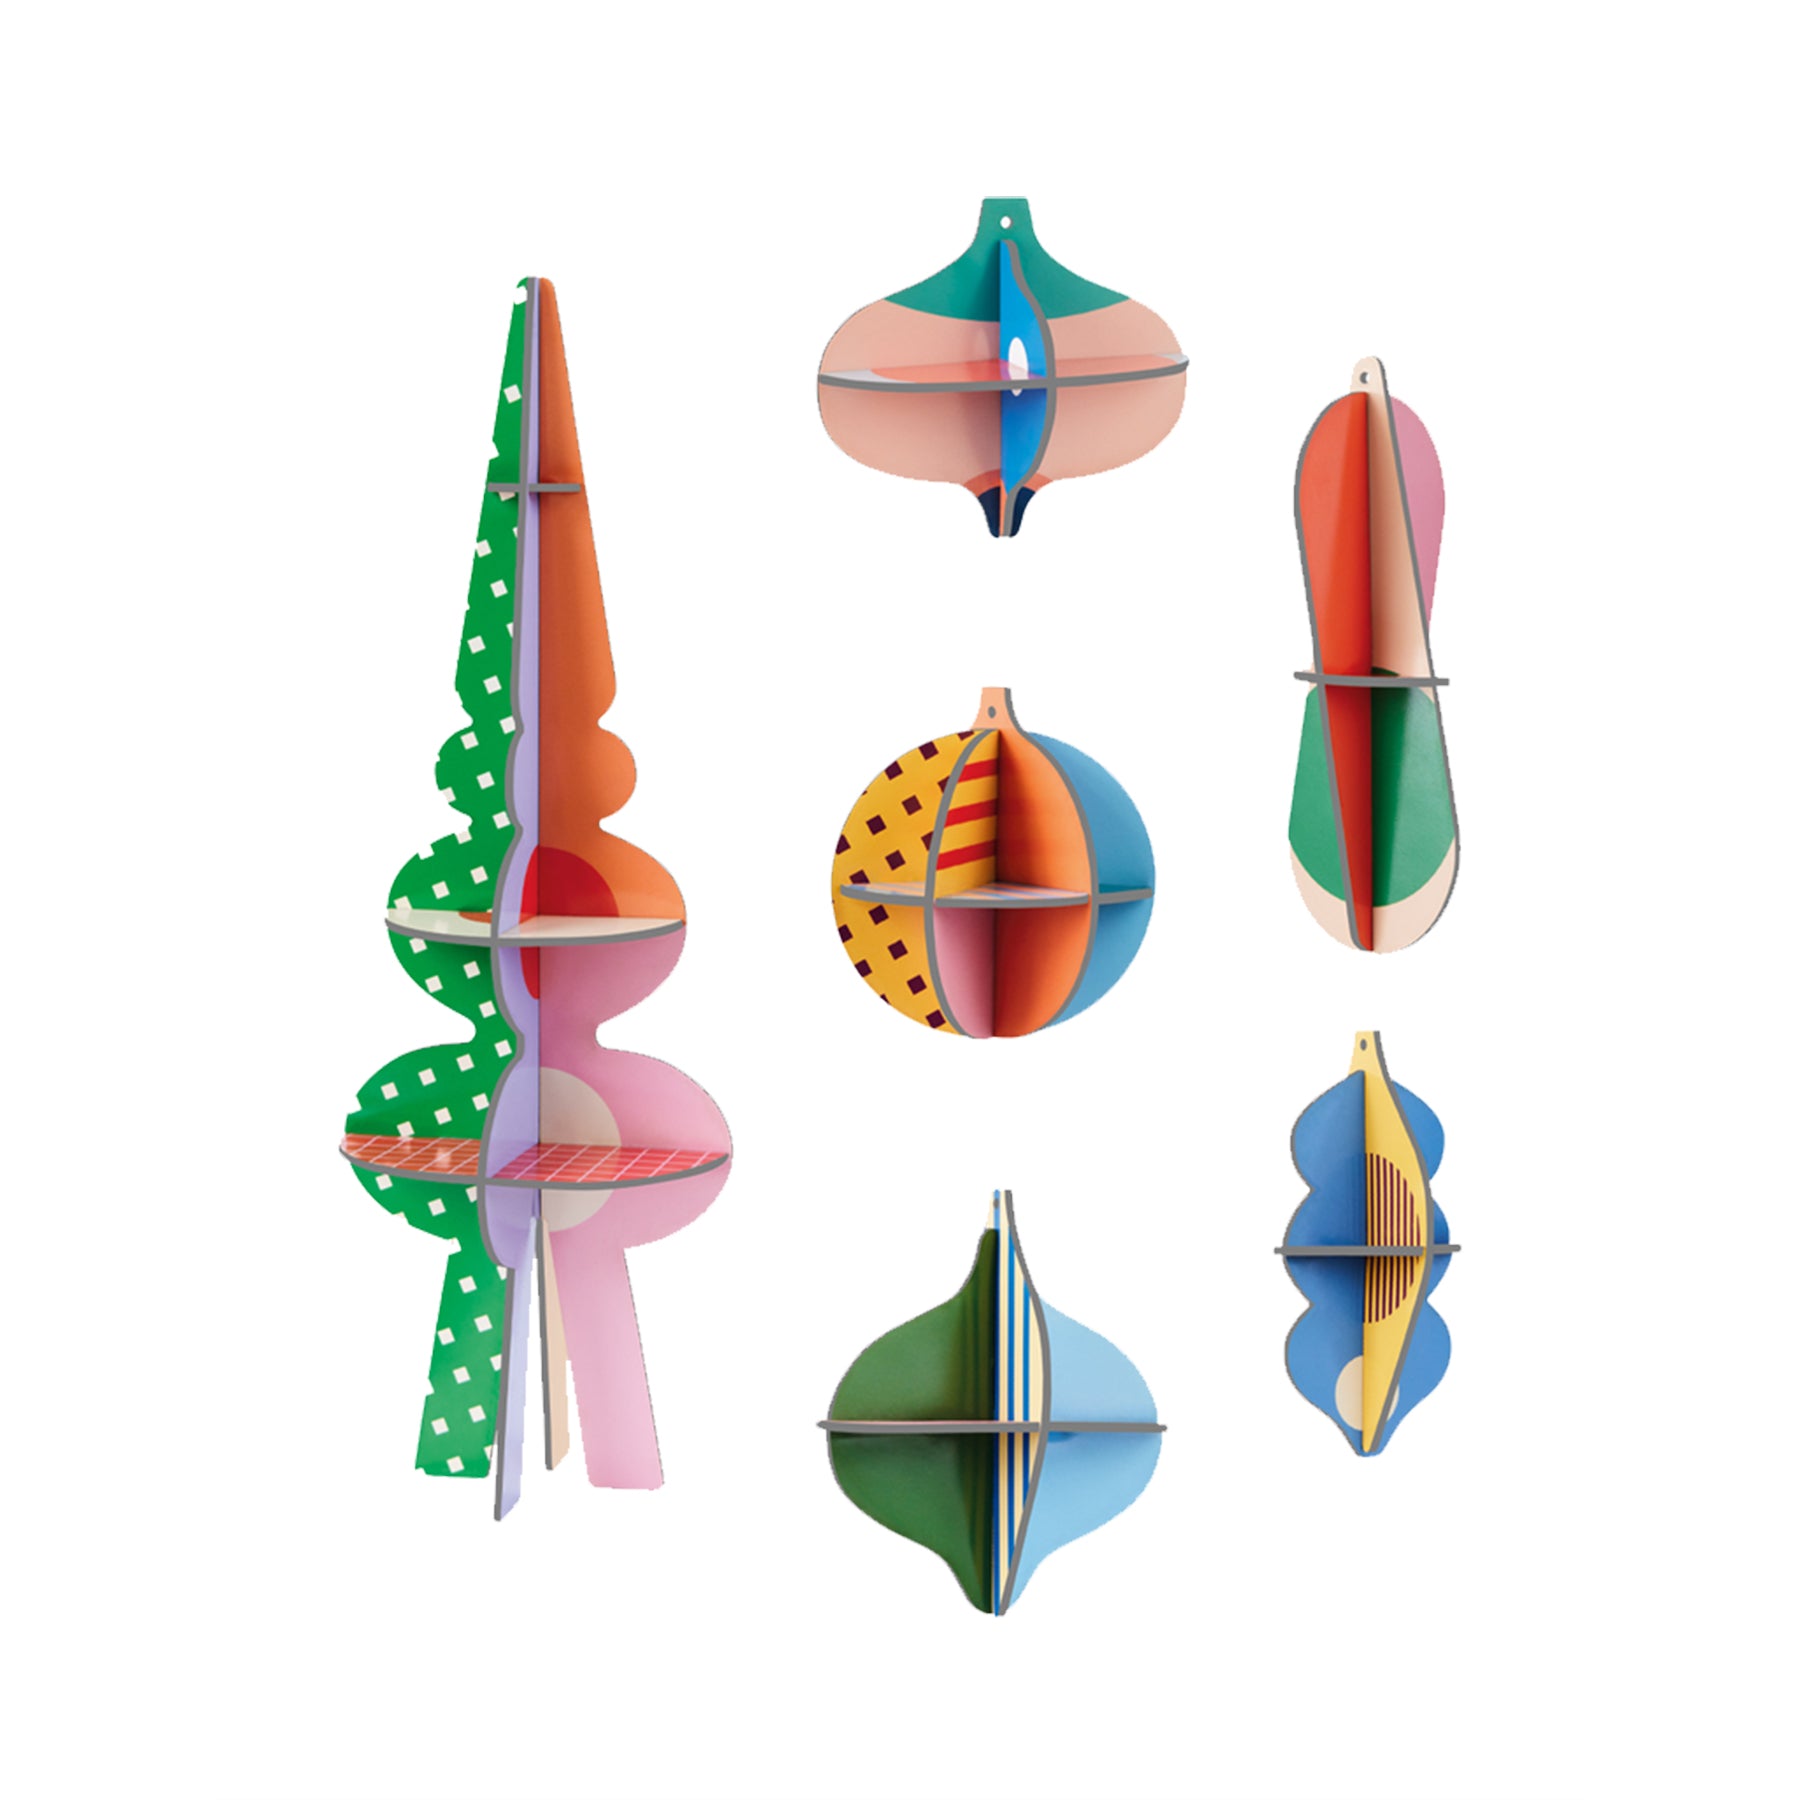 Conjunto de 6 piezas de adornos navideños de cartón reciclado muy coloridos